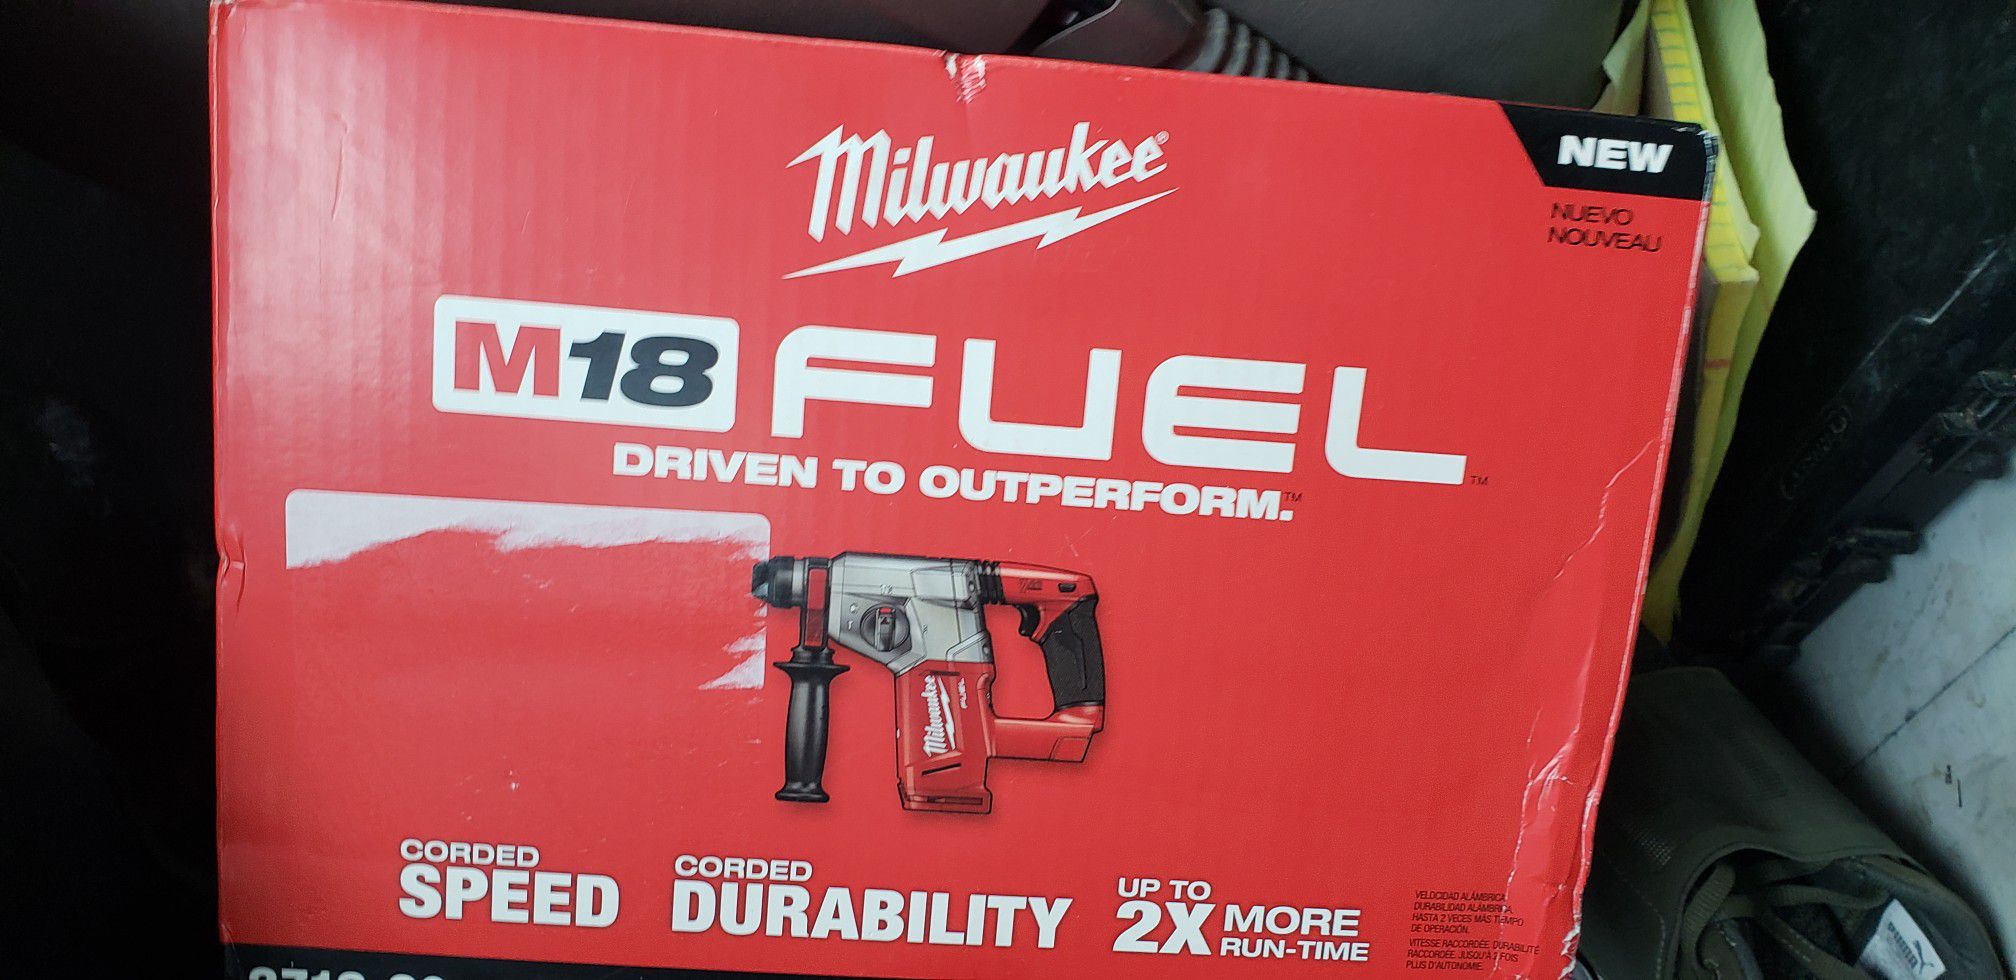 Milwaukee hammer rotary drill